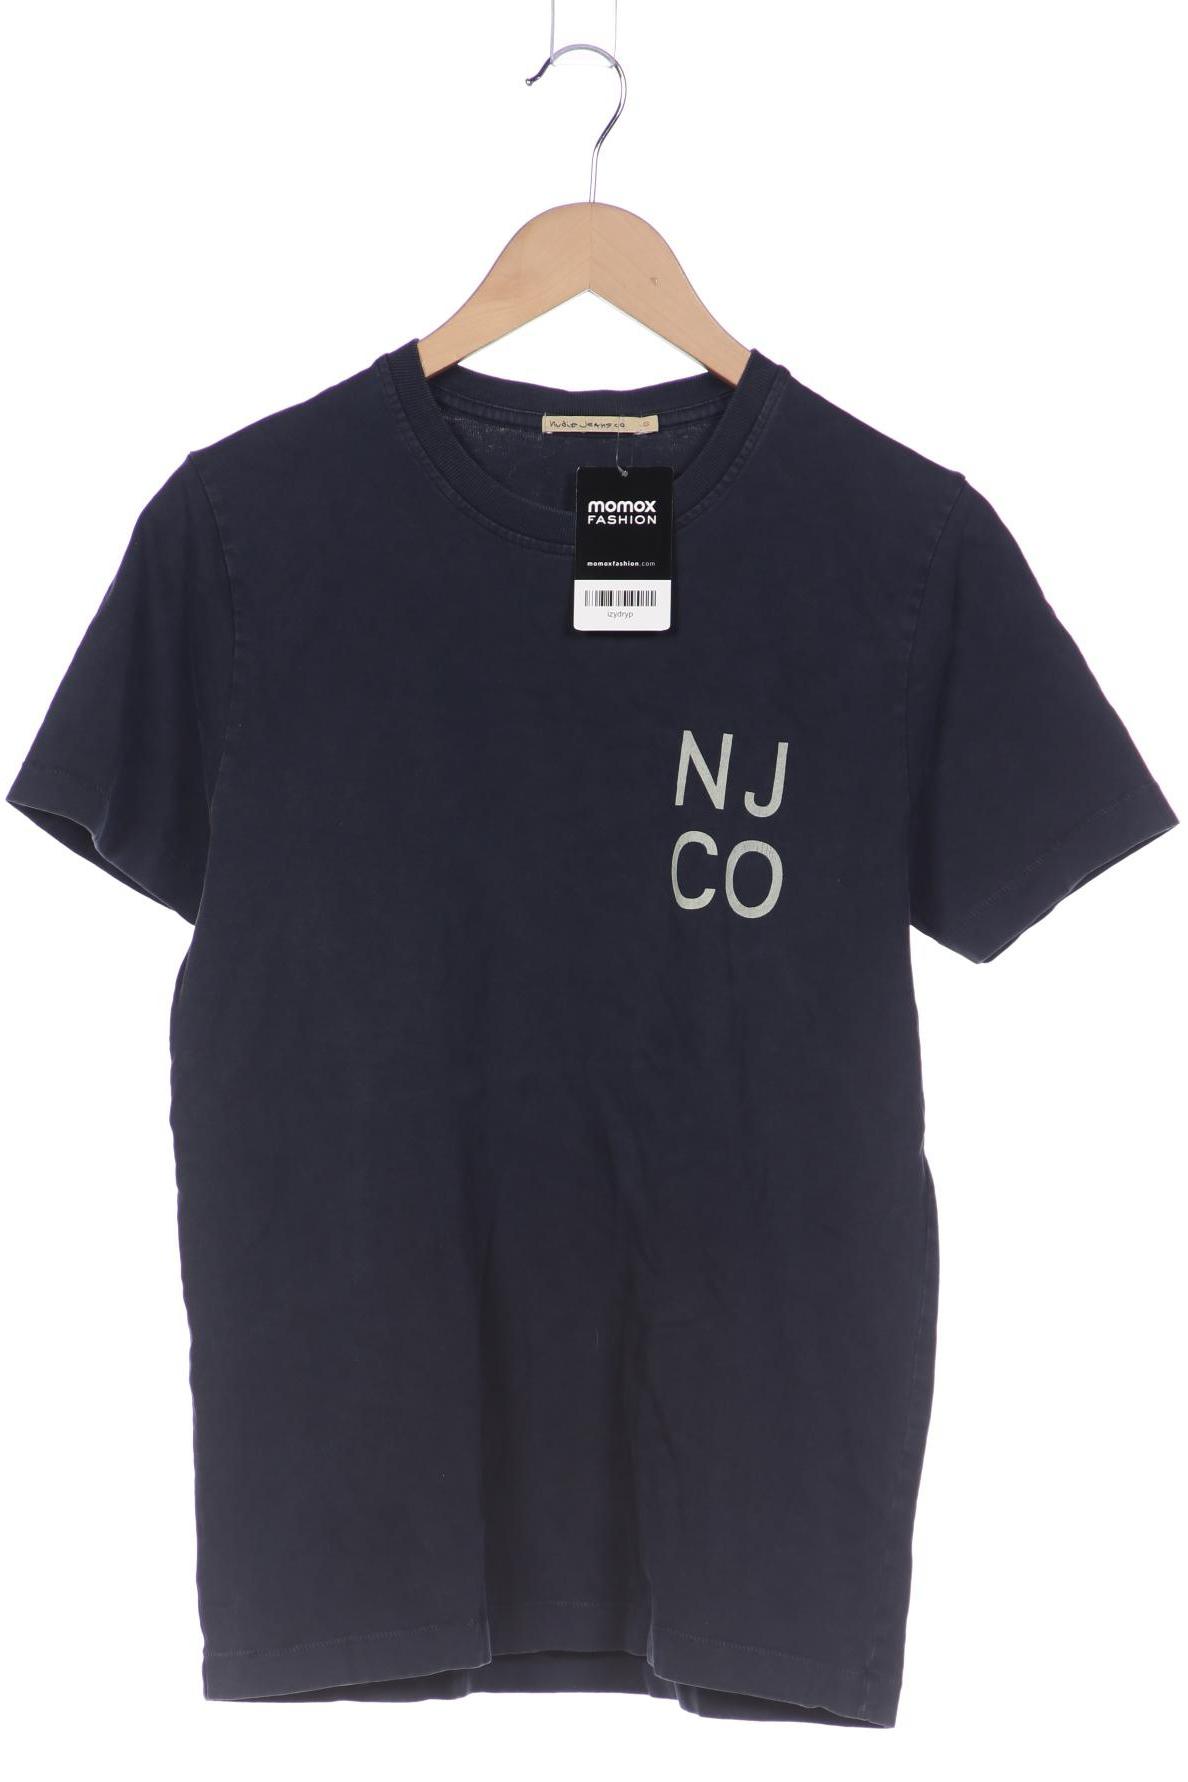 Nudie Jeans Herren T-Shirt, marineblau, Gr. 46 von Nudie Jeans